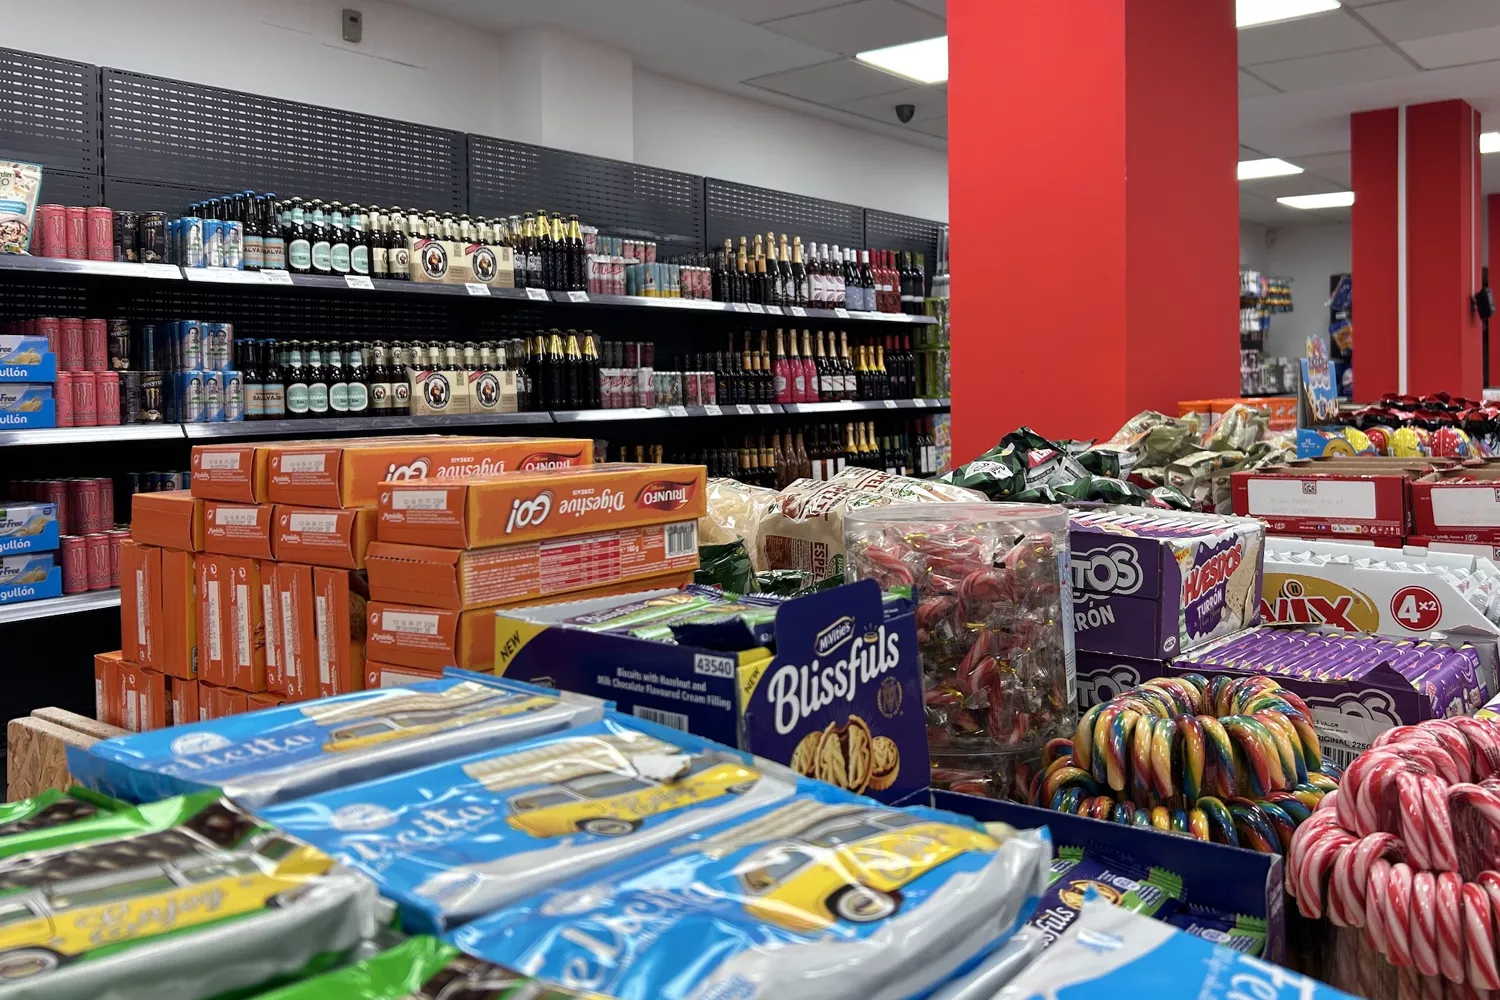 https://www.consumidorglobal.com/uploads/s1/30/30/66/el-interior-del-nuevo-supermercado-sqrups-en-madrid-cedida.webp